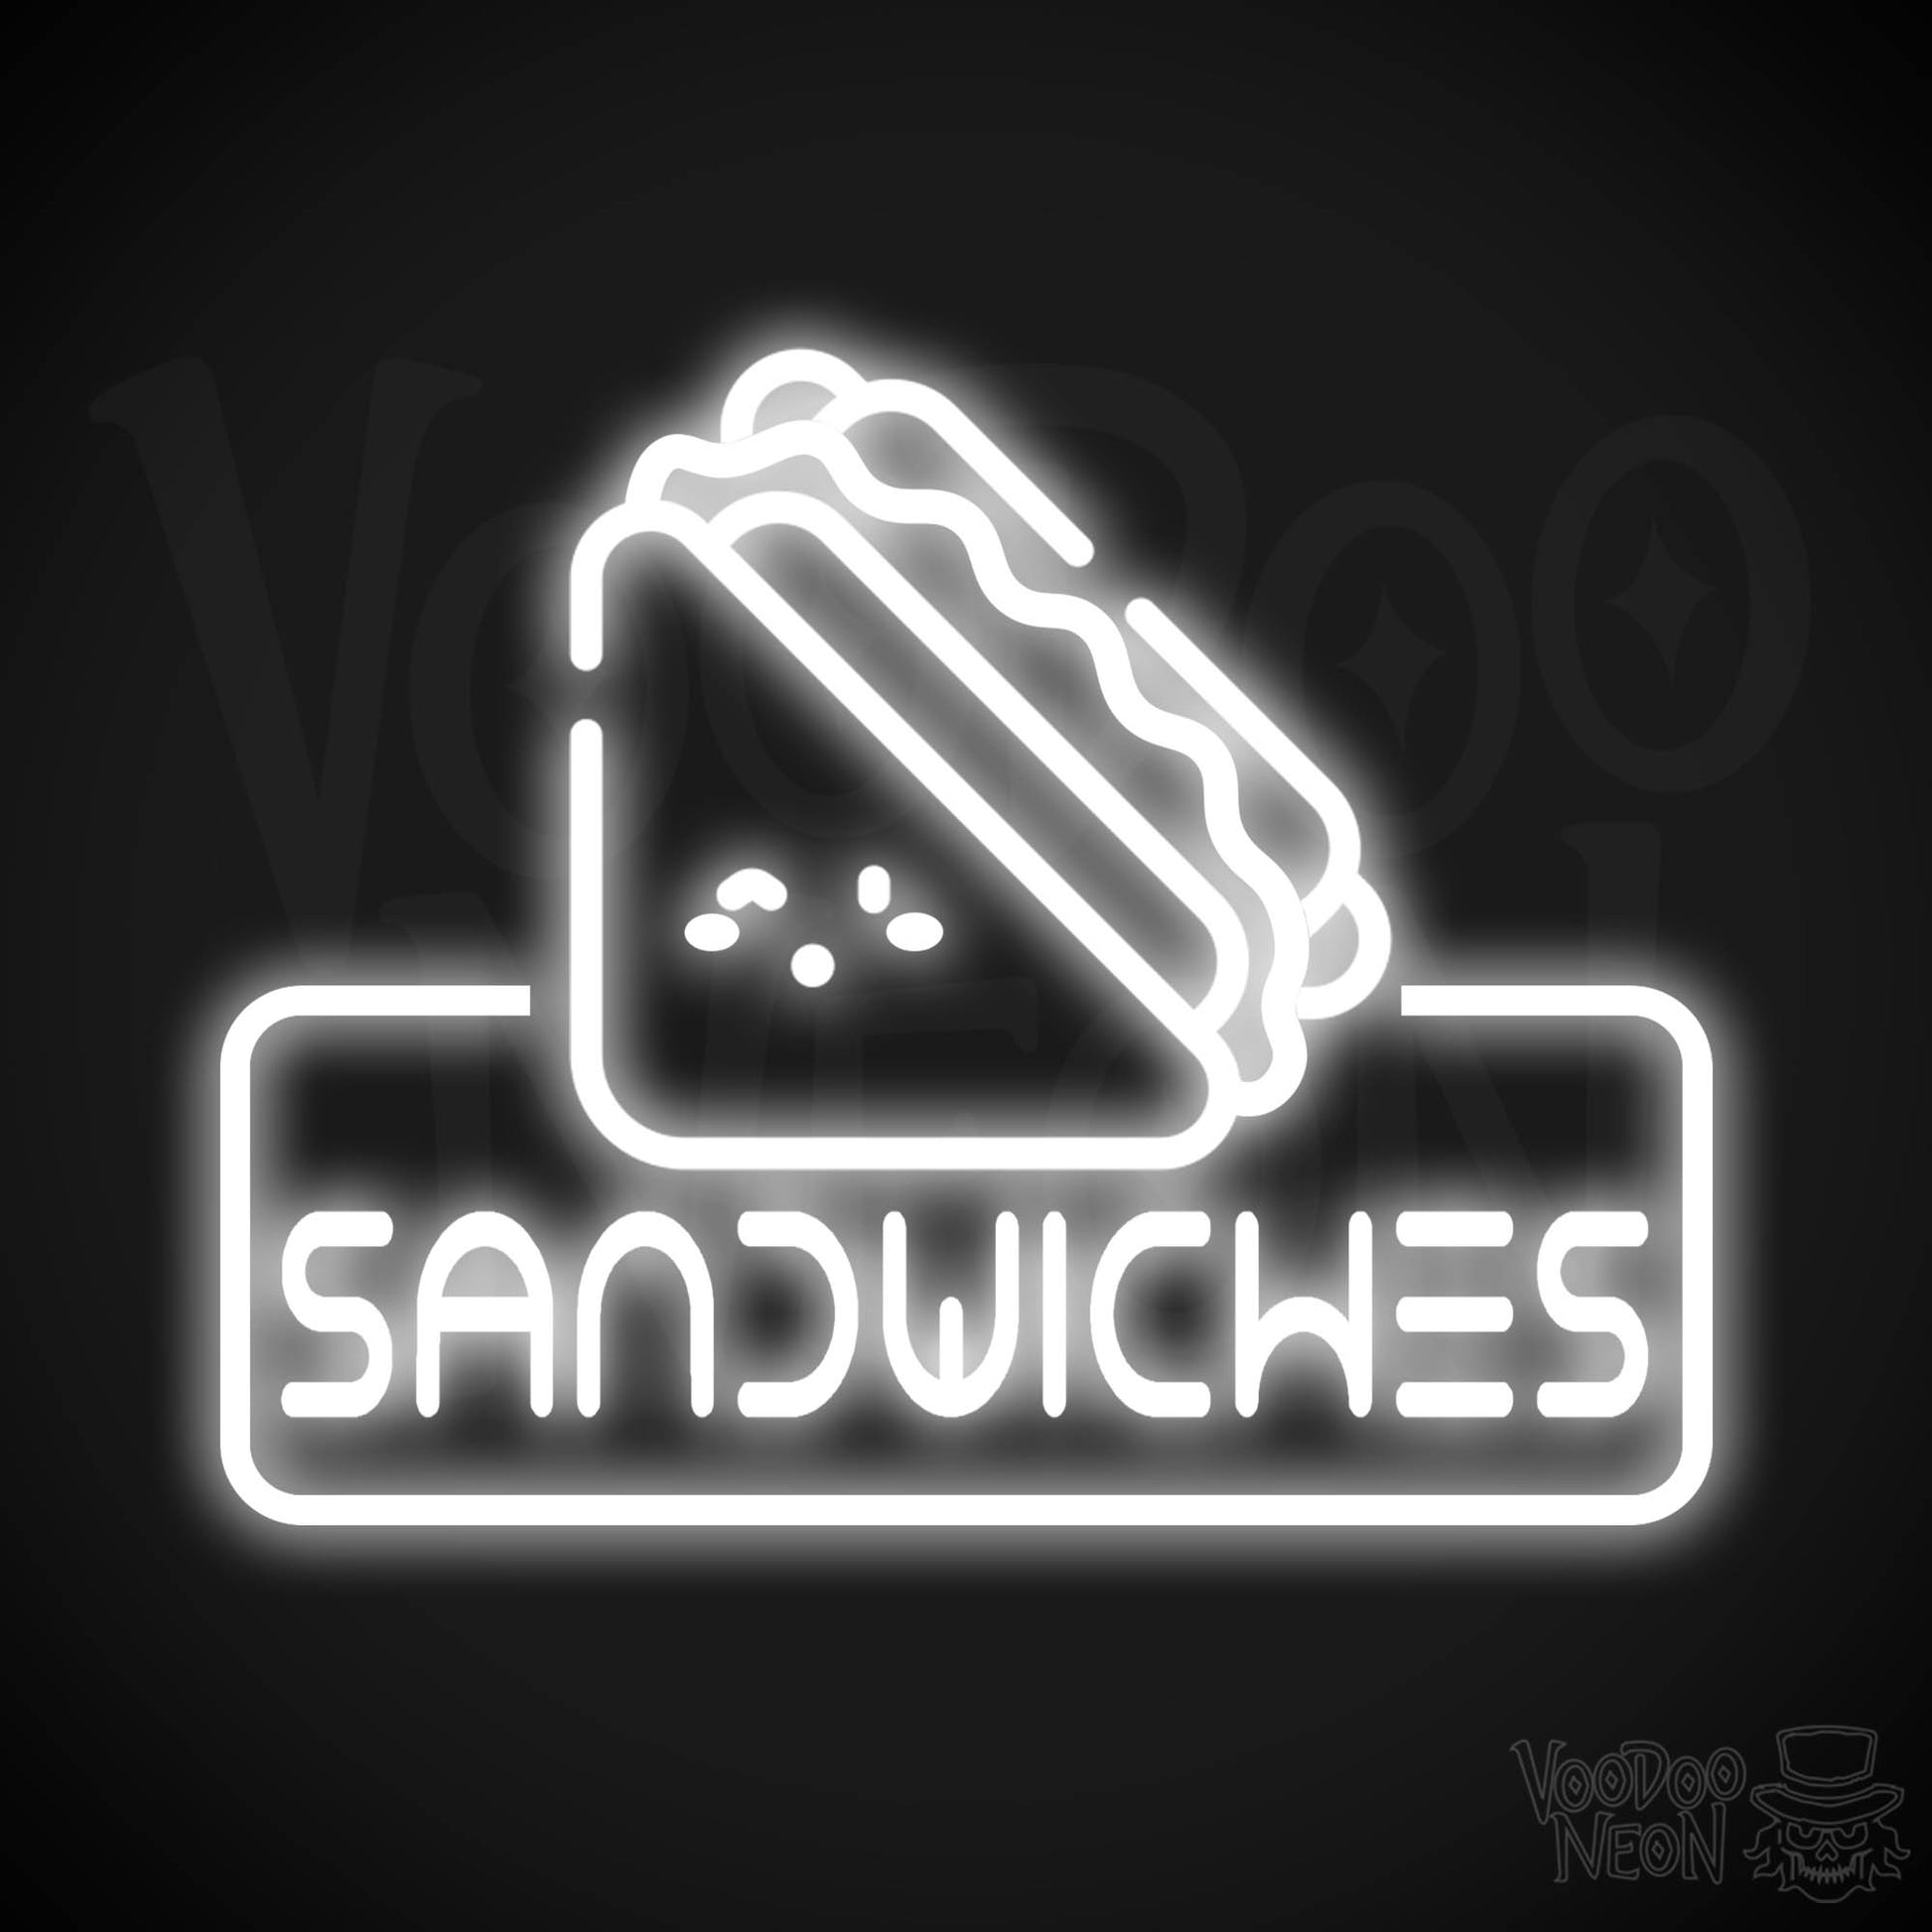 Neon Sandwiches Sign - Sandwich Neon Sign - Neon Sandwich Shop Sign - Color White